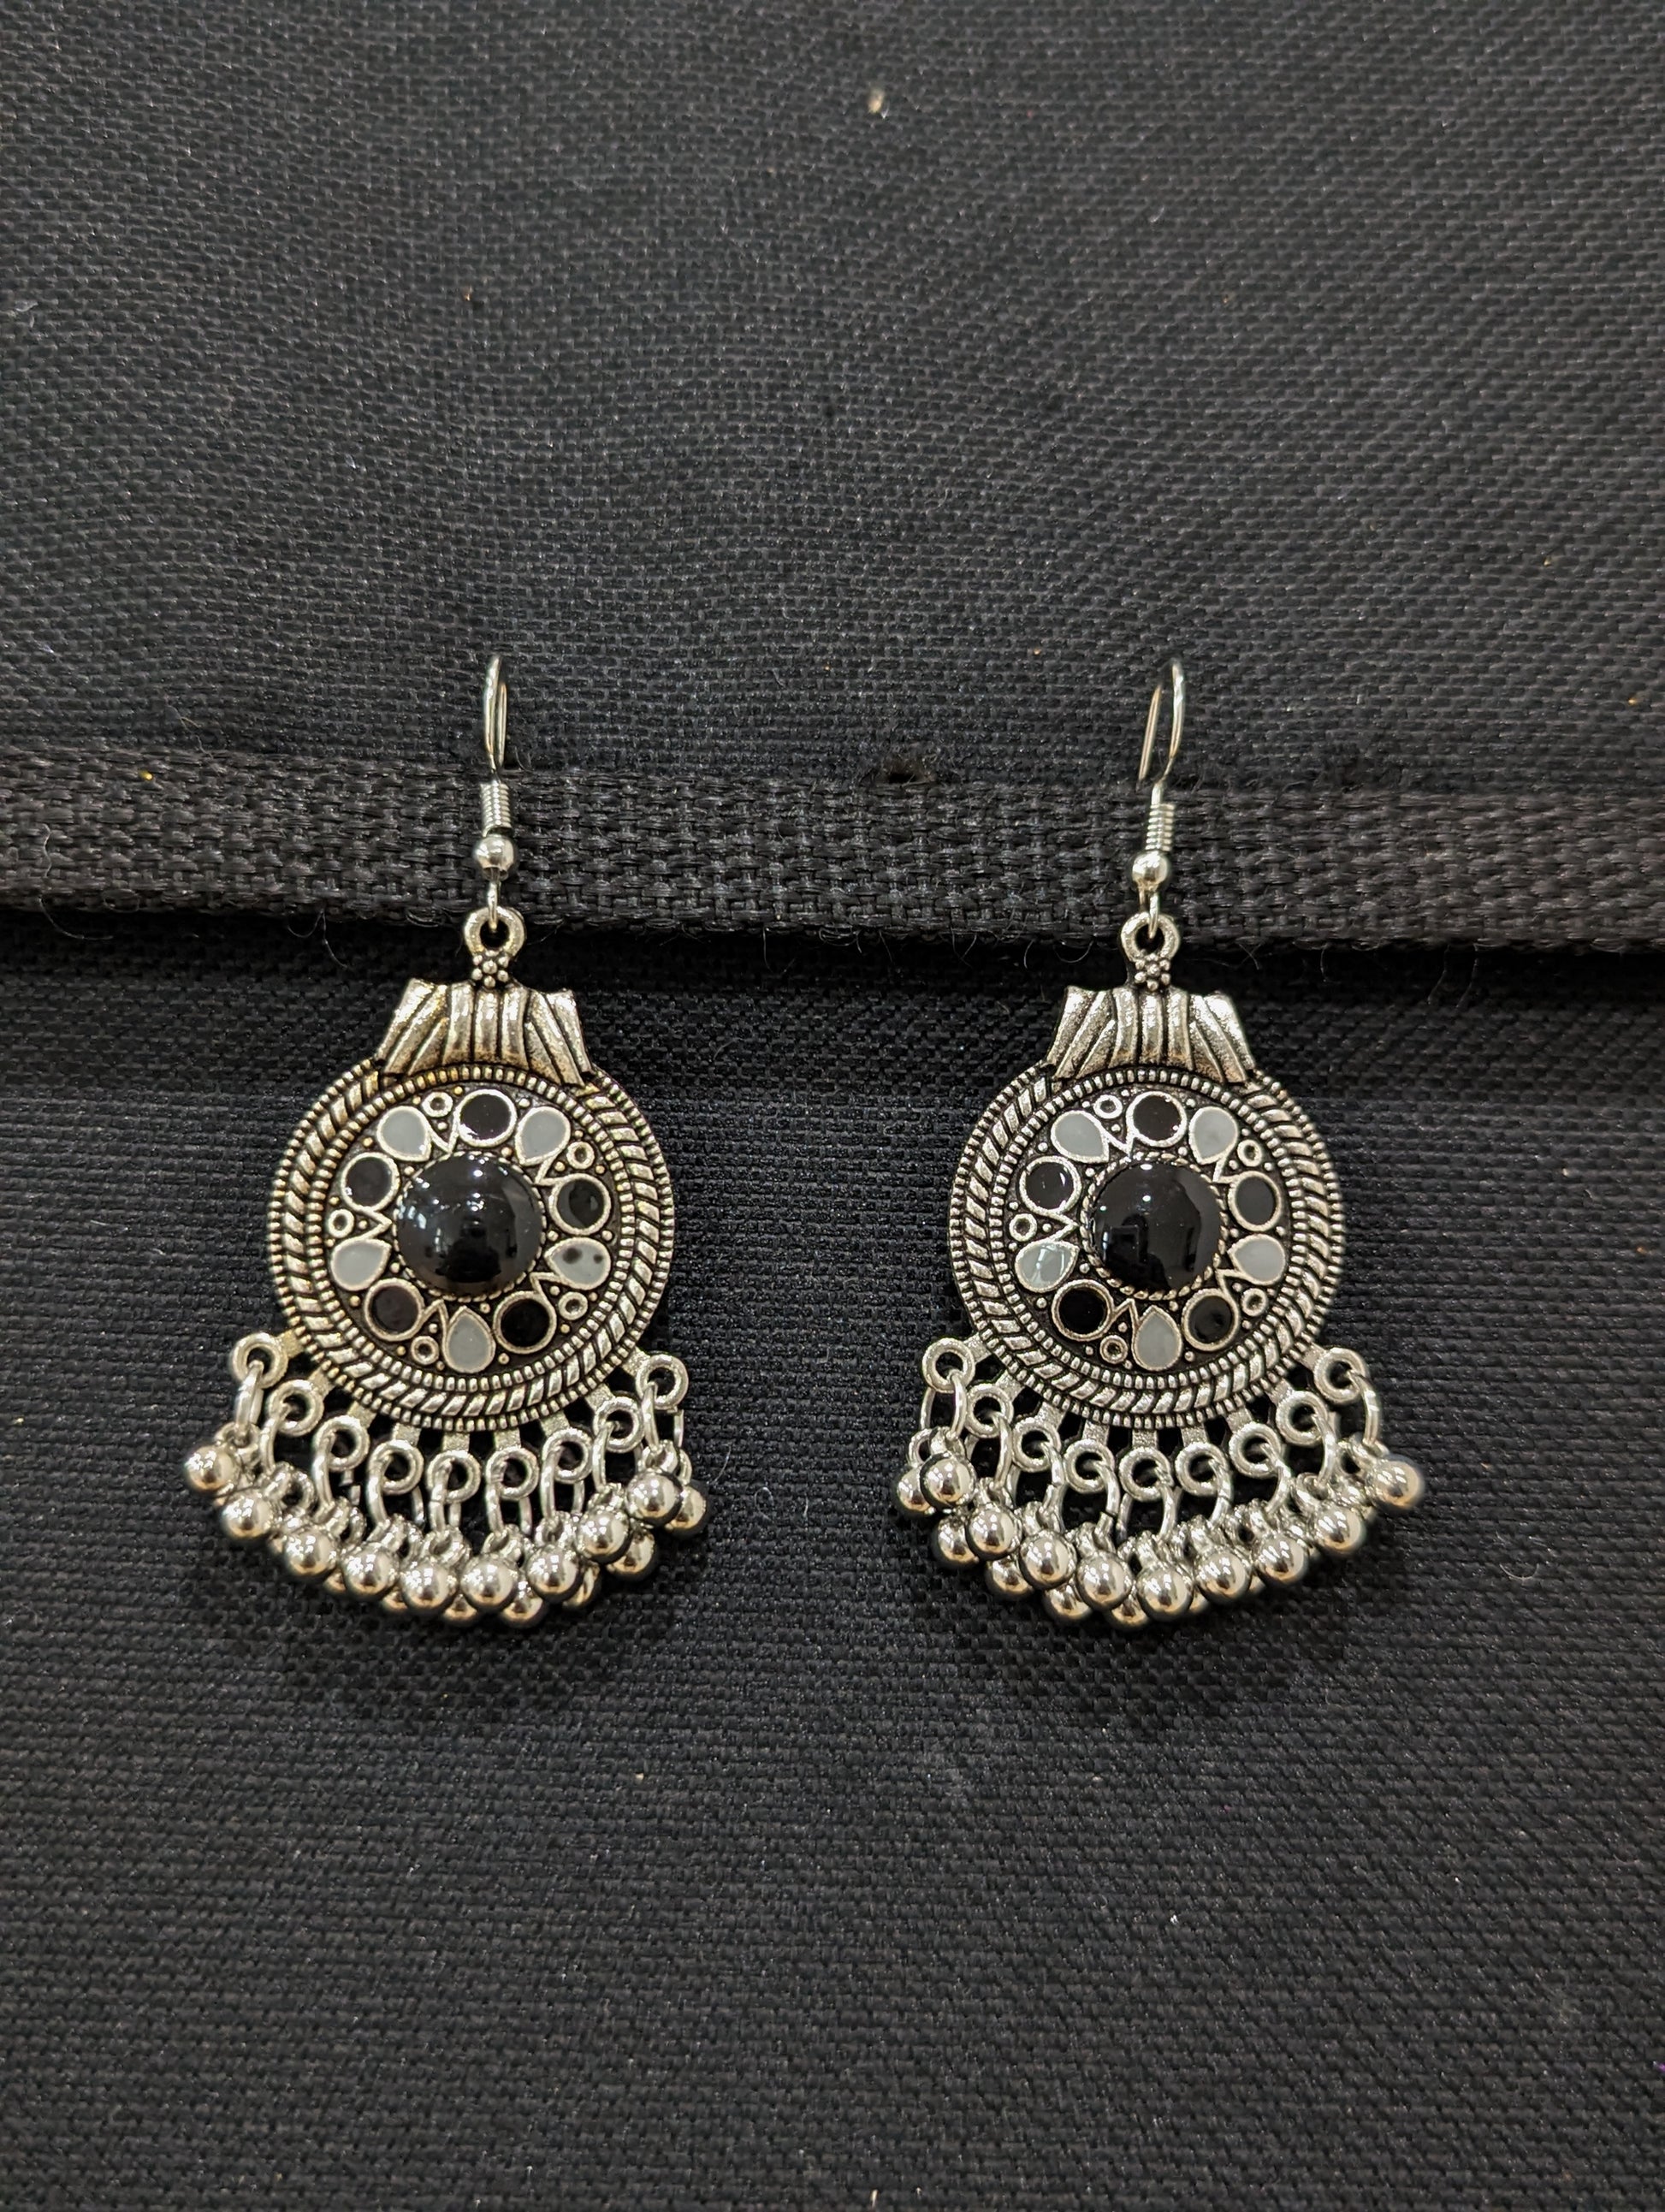 Antique silver enamel hook drop Earrings - 4 designs - Simpliful